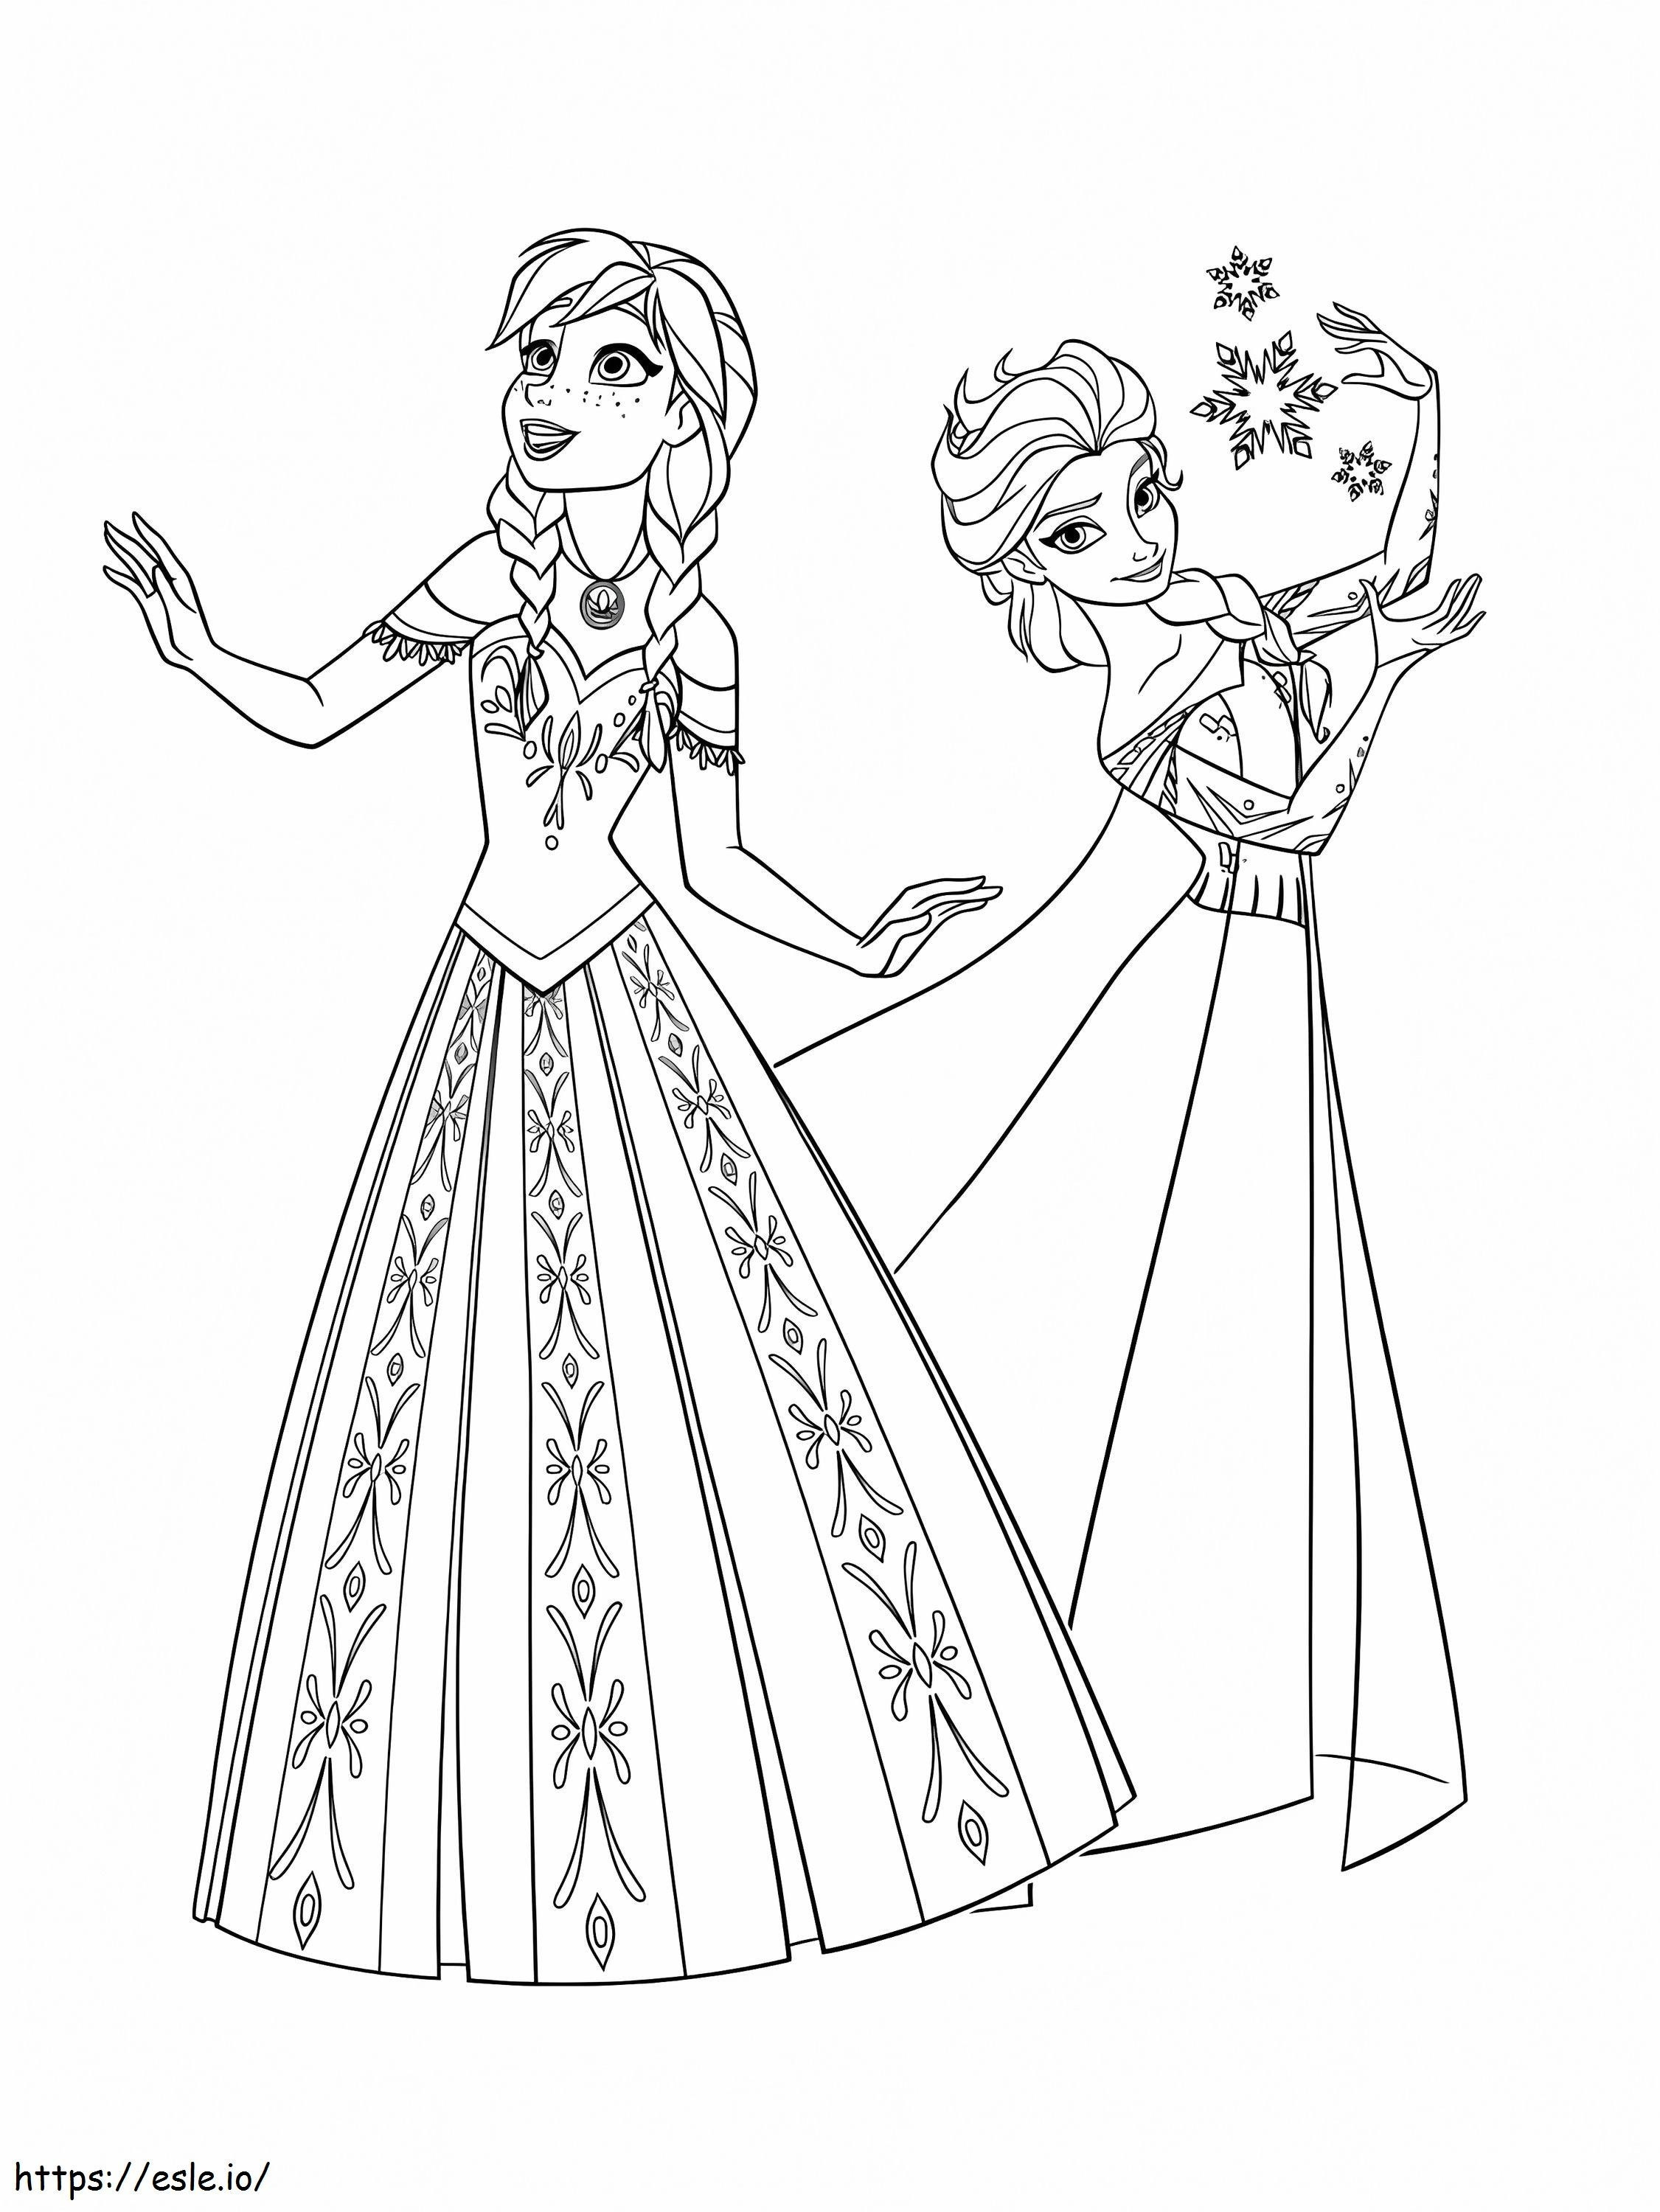 Anna und Elsa ausmalbilder